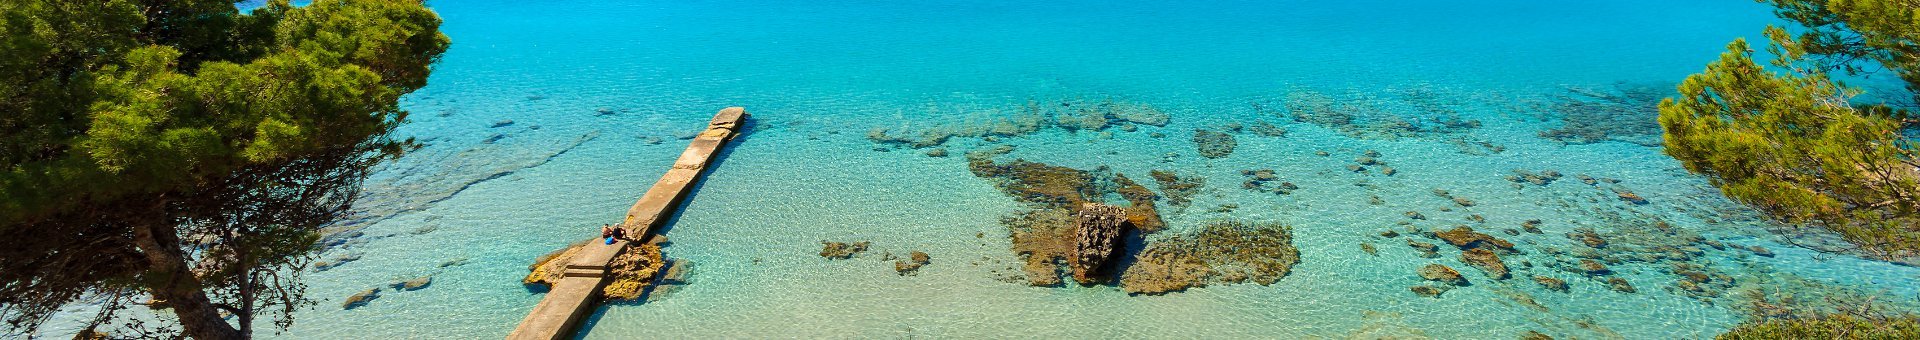 Tipps für den Abflug von Mallorca